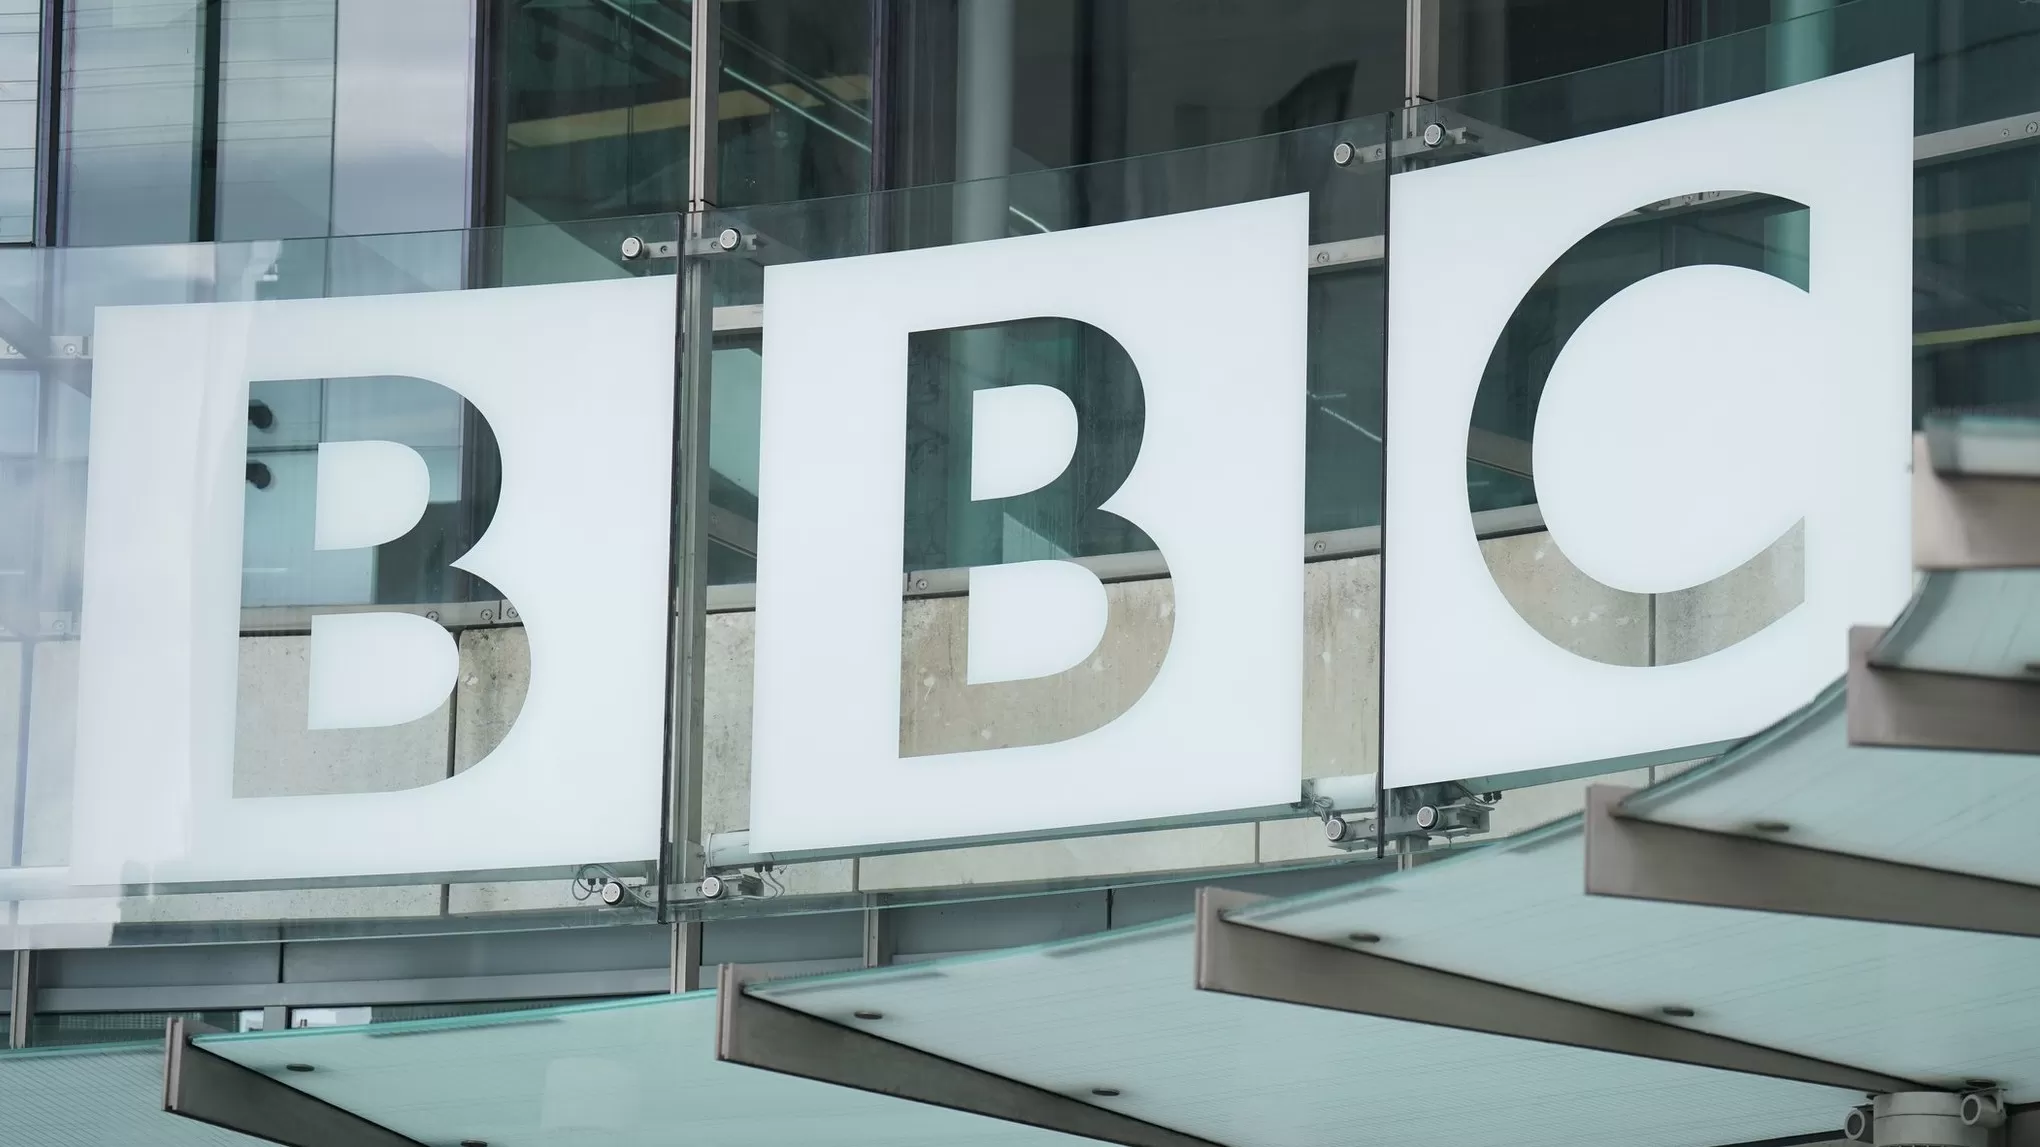 BBC-ի հաղորդավարը անչափահասի հետ ունեցած ինտիմ շփման պատճառով հեռացվել է եթերից